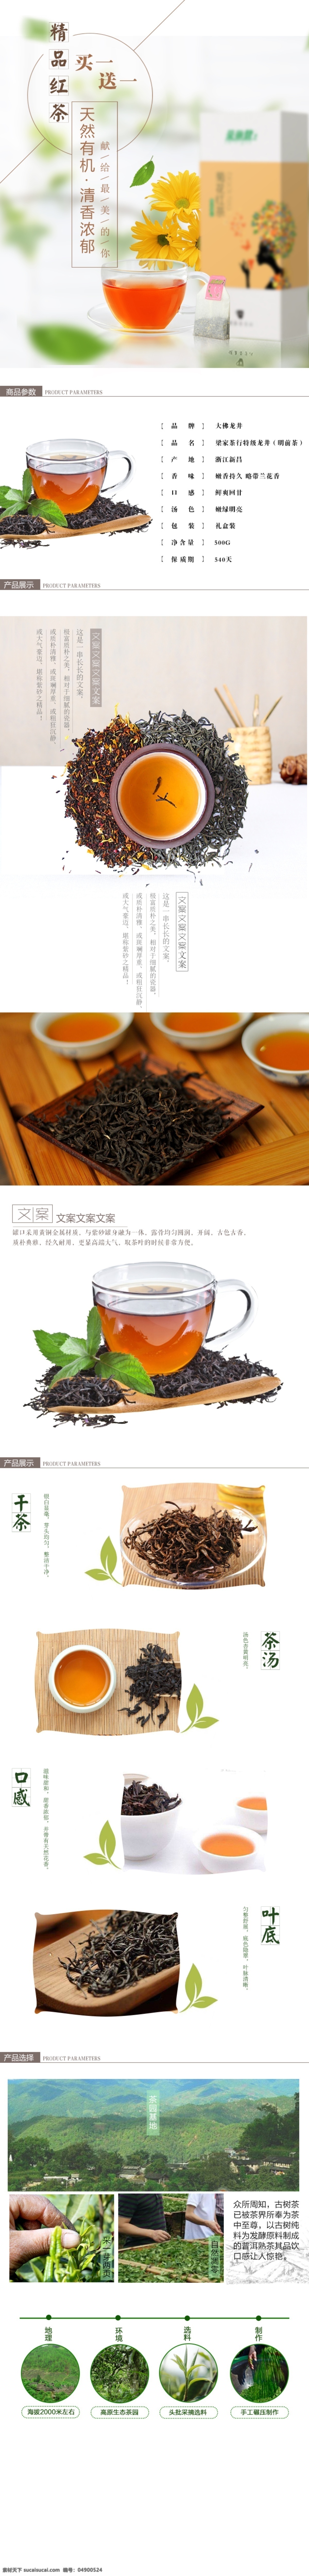 红茶 茶叶 详情 页 描述 天然 有机 模板 茶叶礼盒 茶饮 养生茶 有机茶